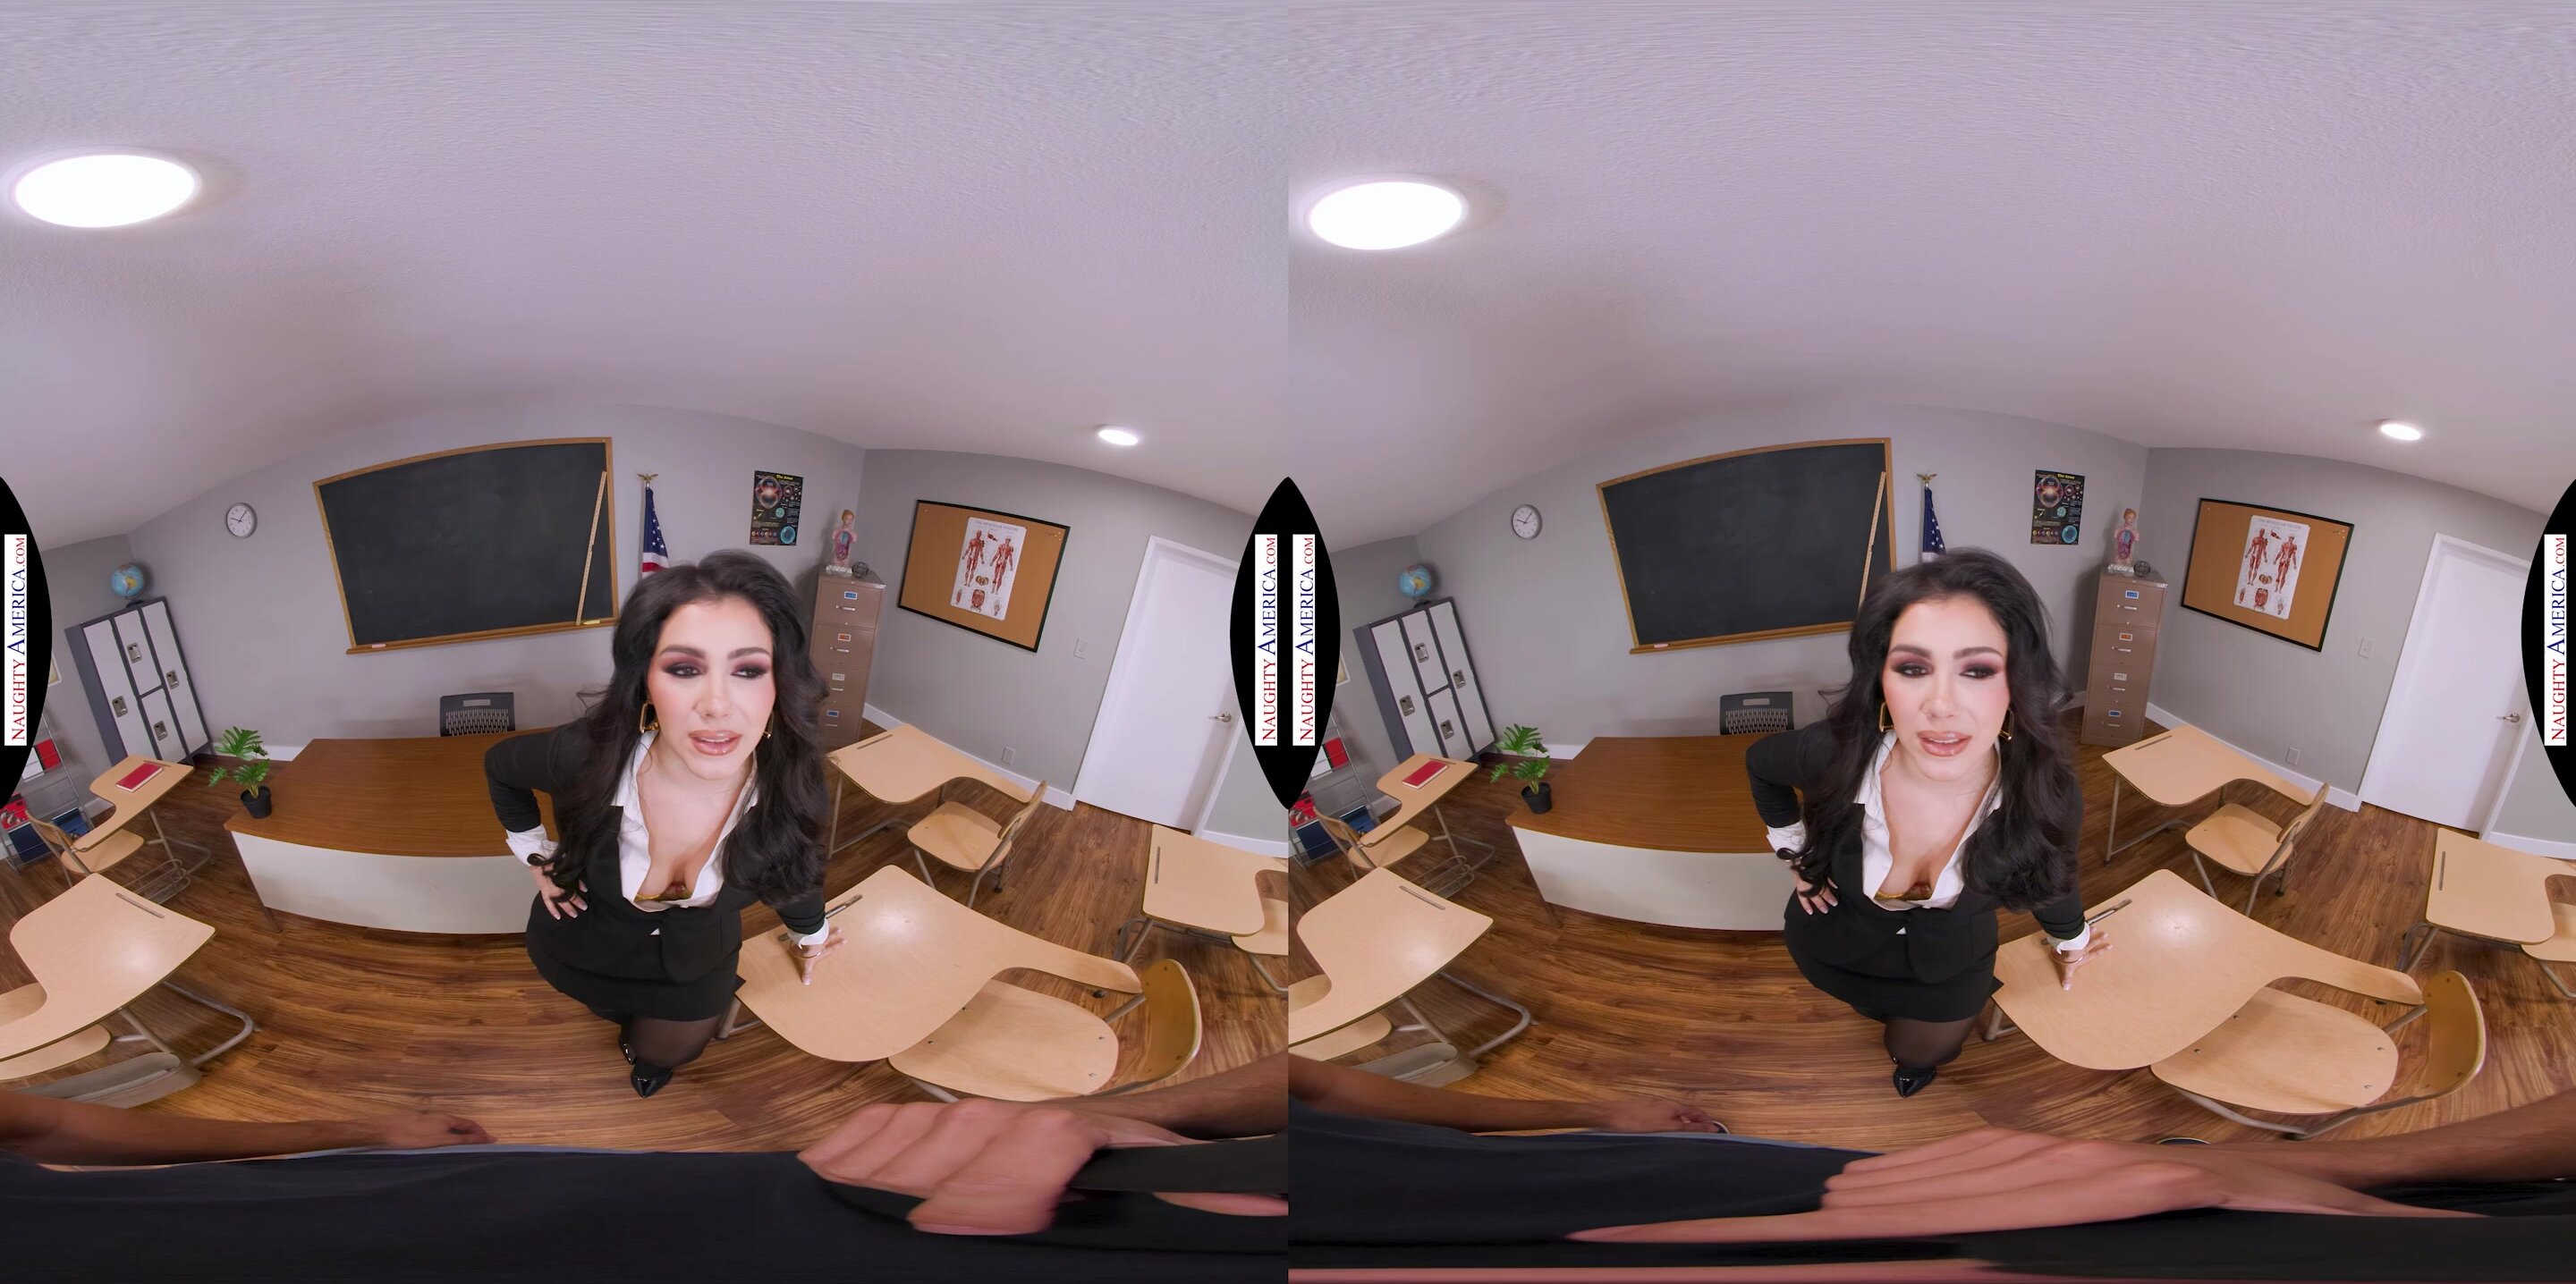 Valentina Nappi - Naughty America VR